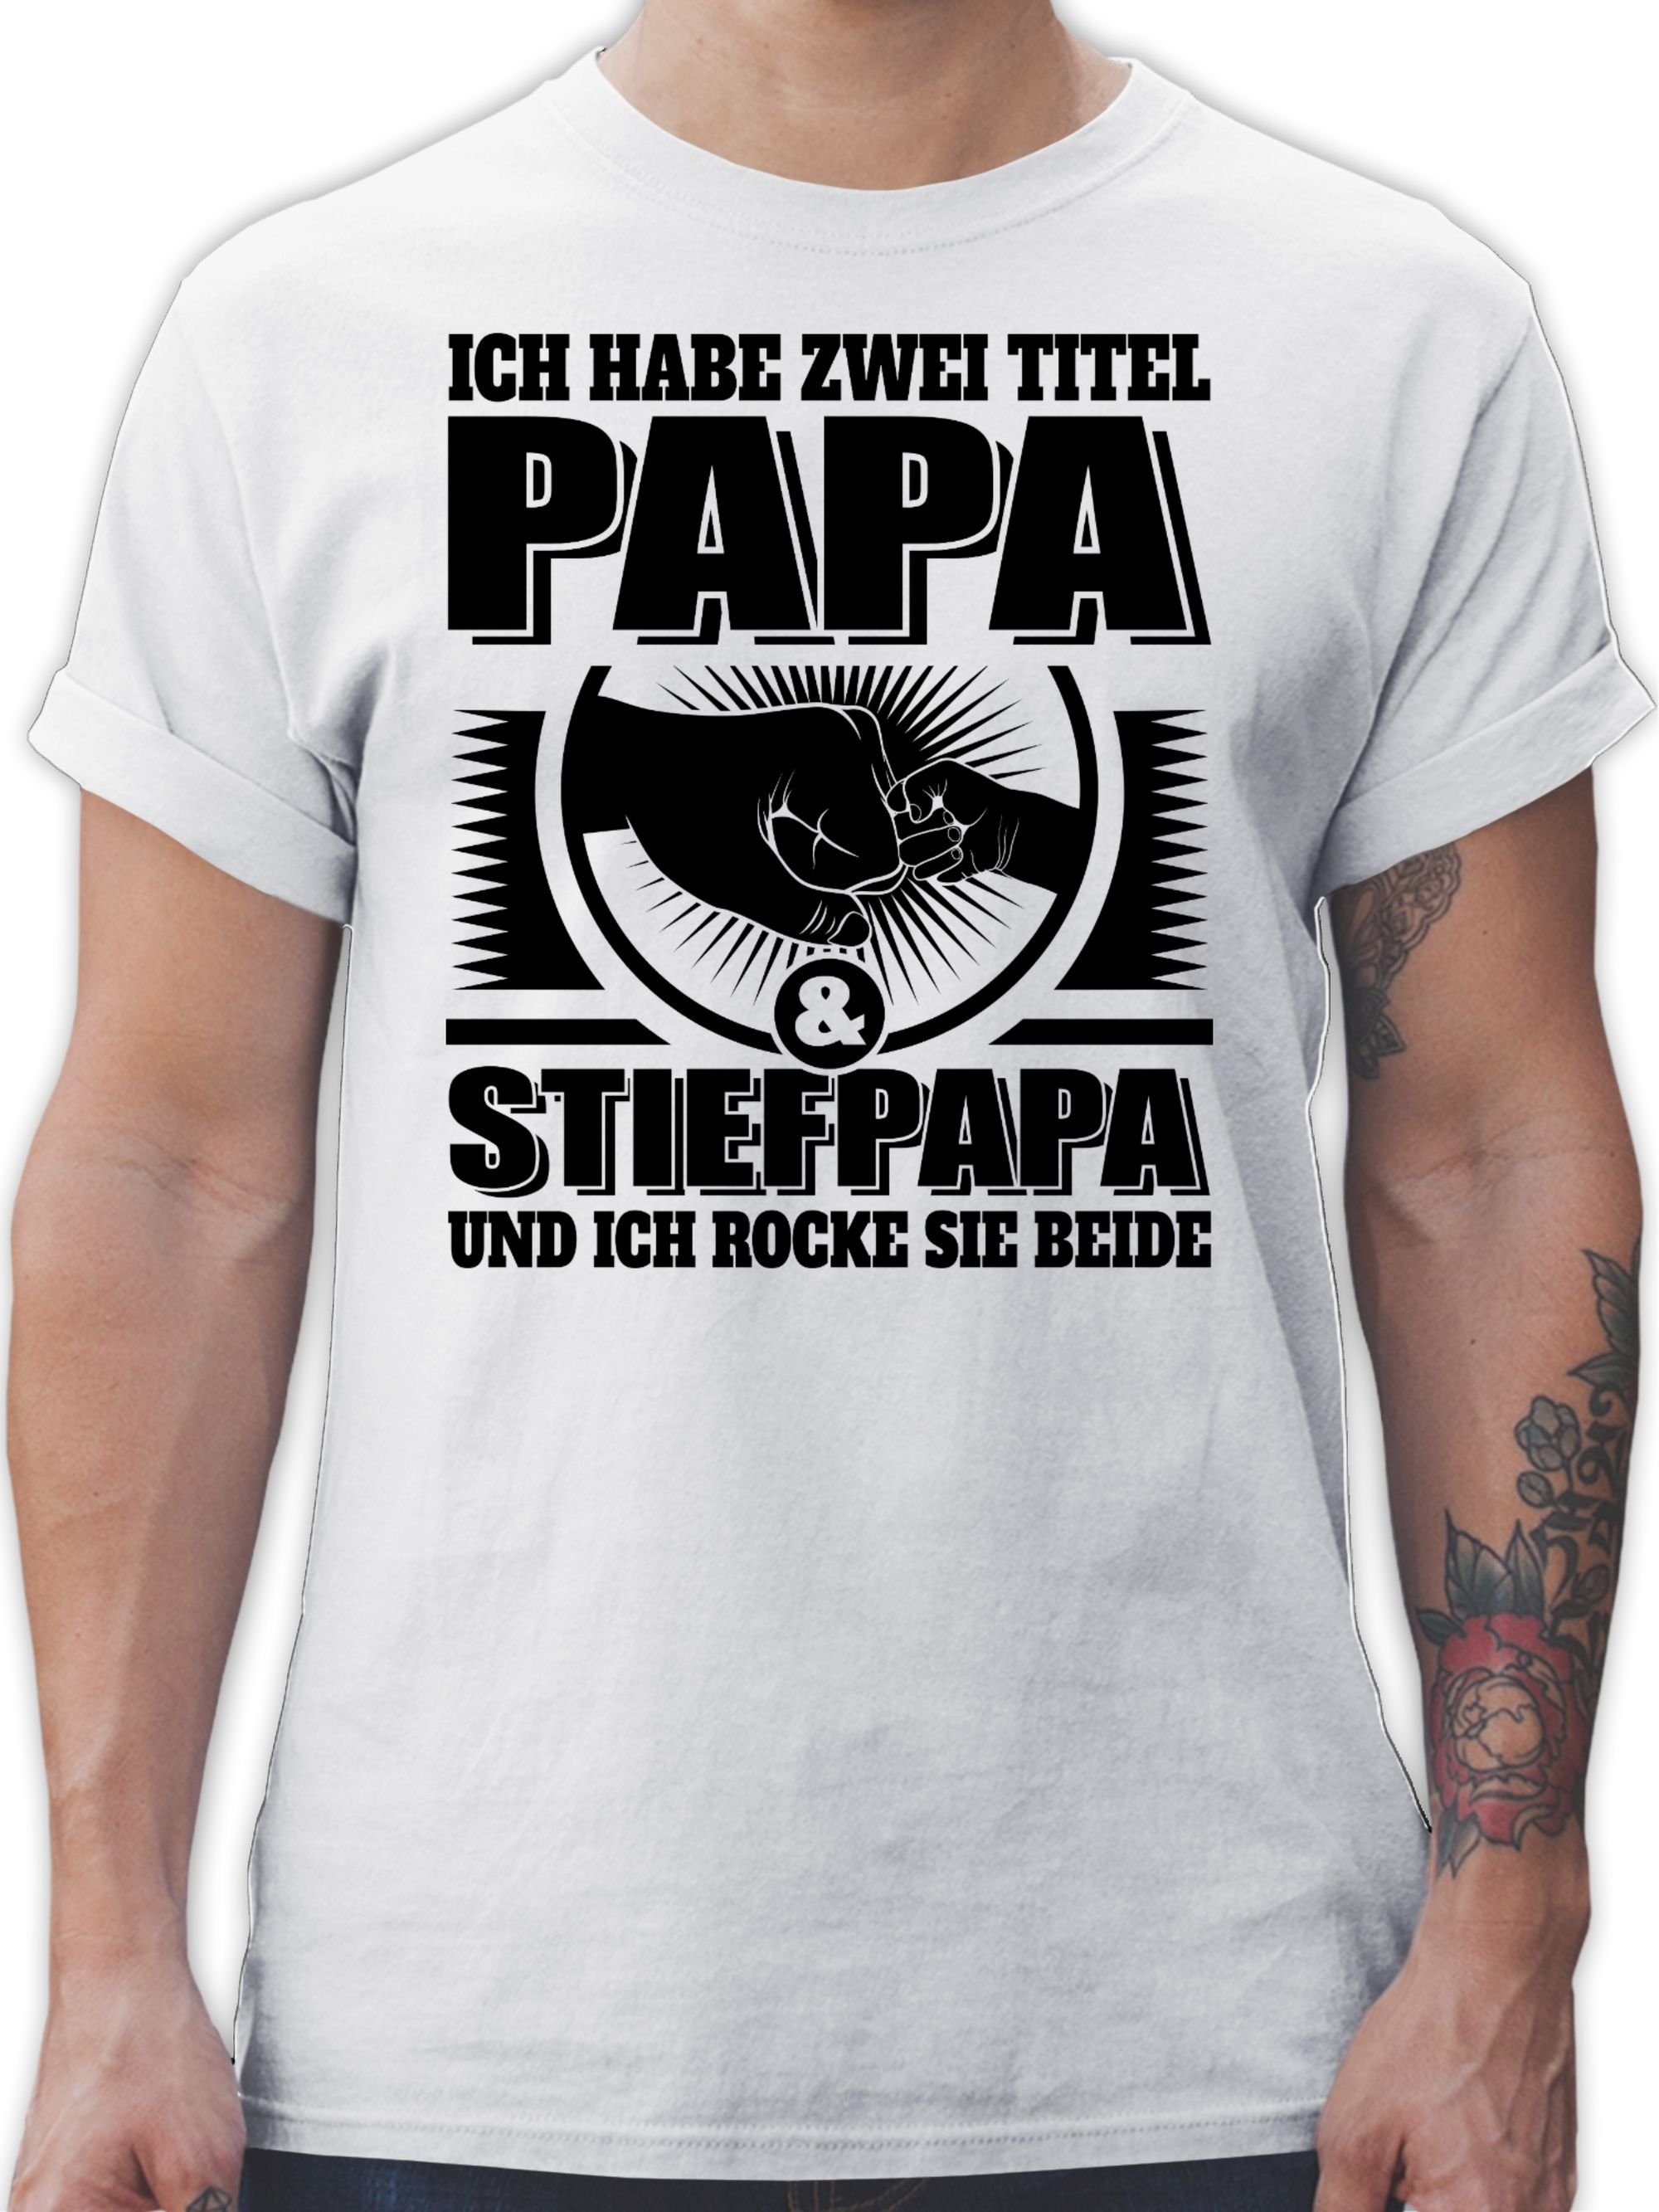 sch ich Papa Papa Titel Shirtracer und sie Vatertag habe für zwei rocke Weiß 03 beide Stiefpapa - Ich und - T-Shirt Geschenk